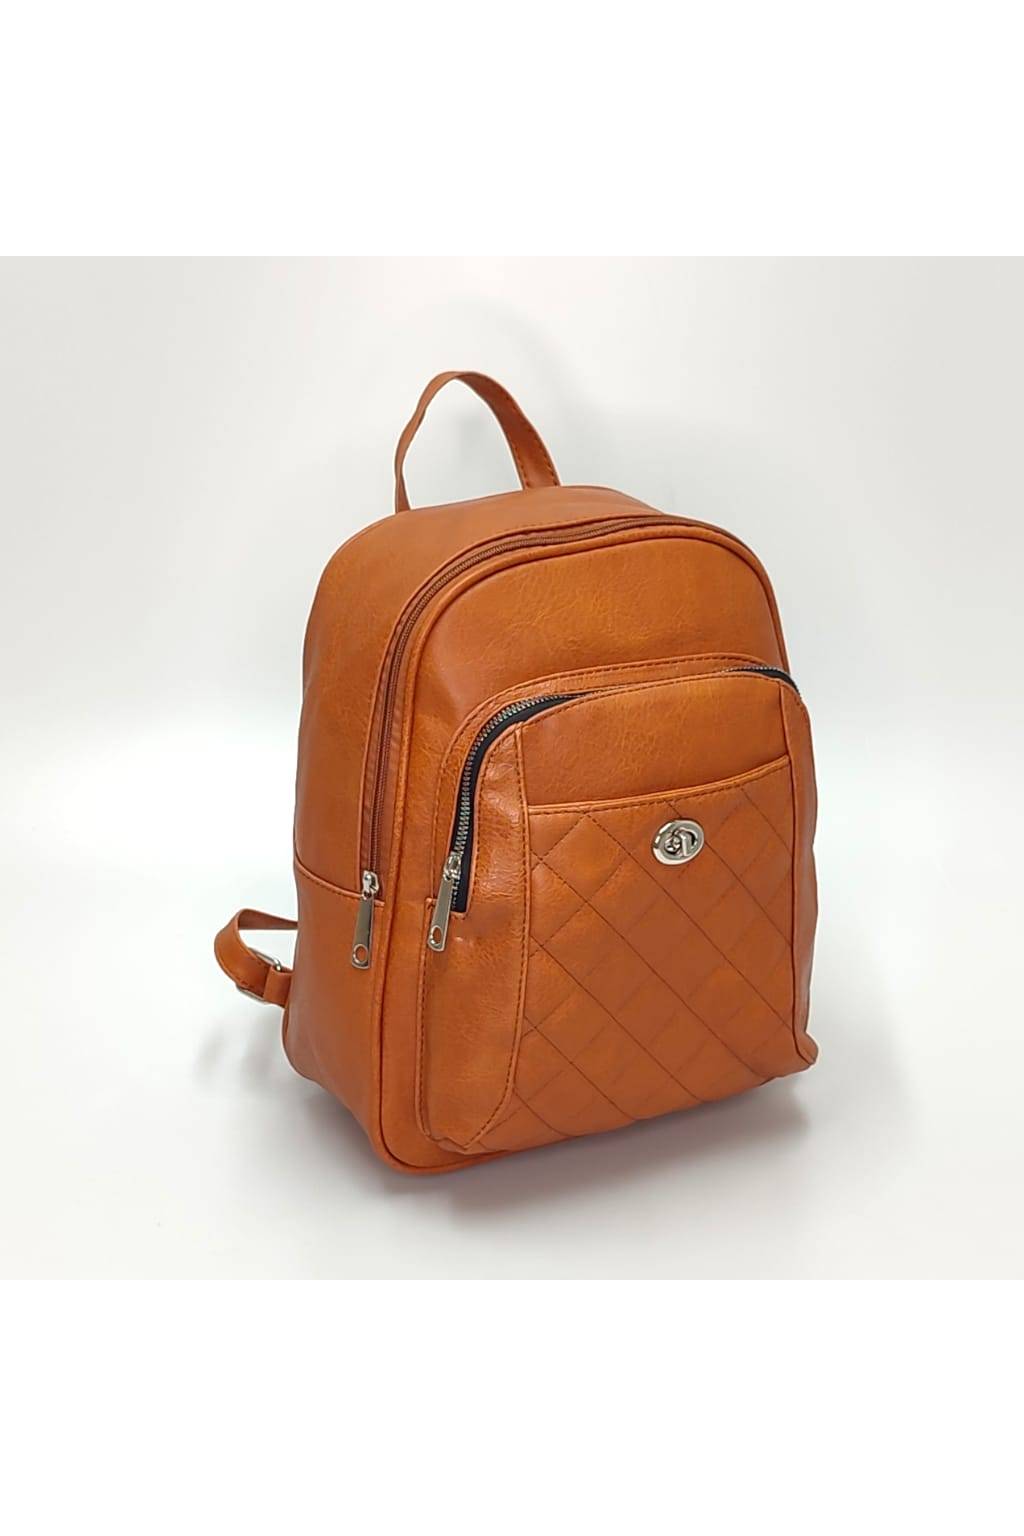 Dámsky ruksak DL0157 tehlový www.kabelky vypredaj (1)